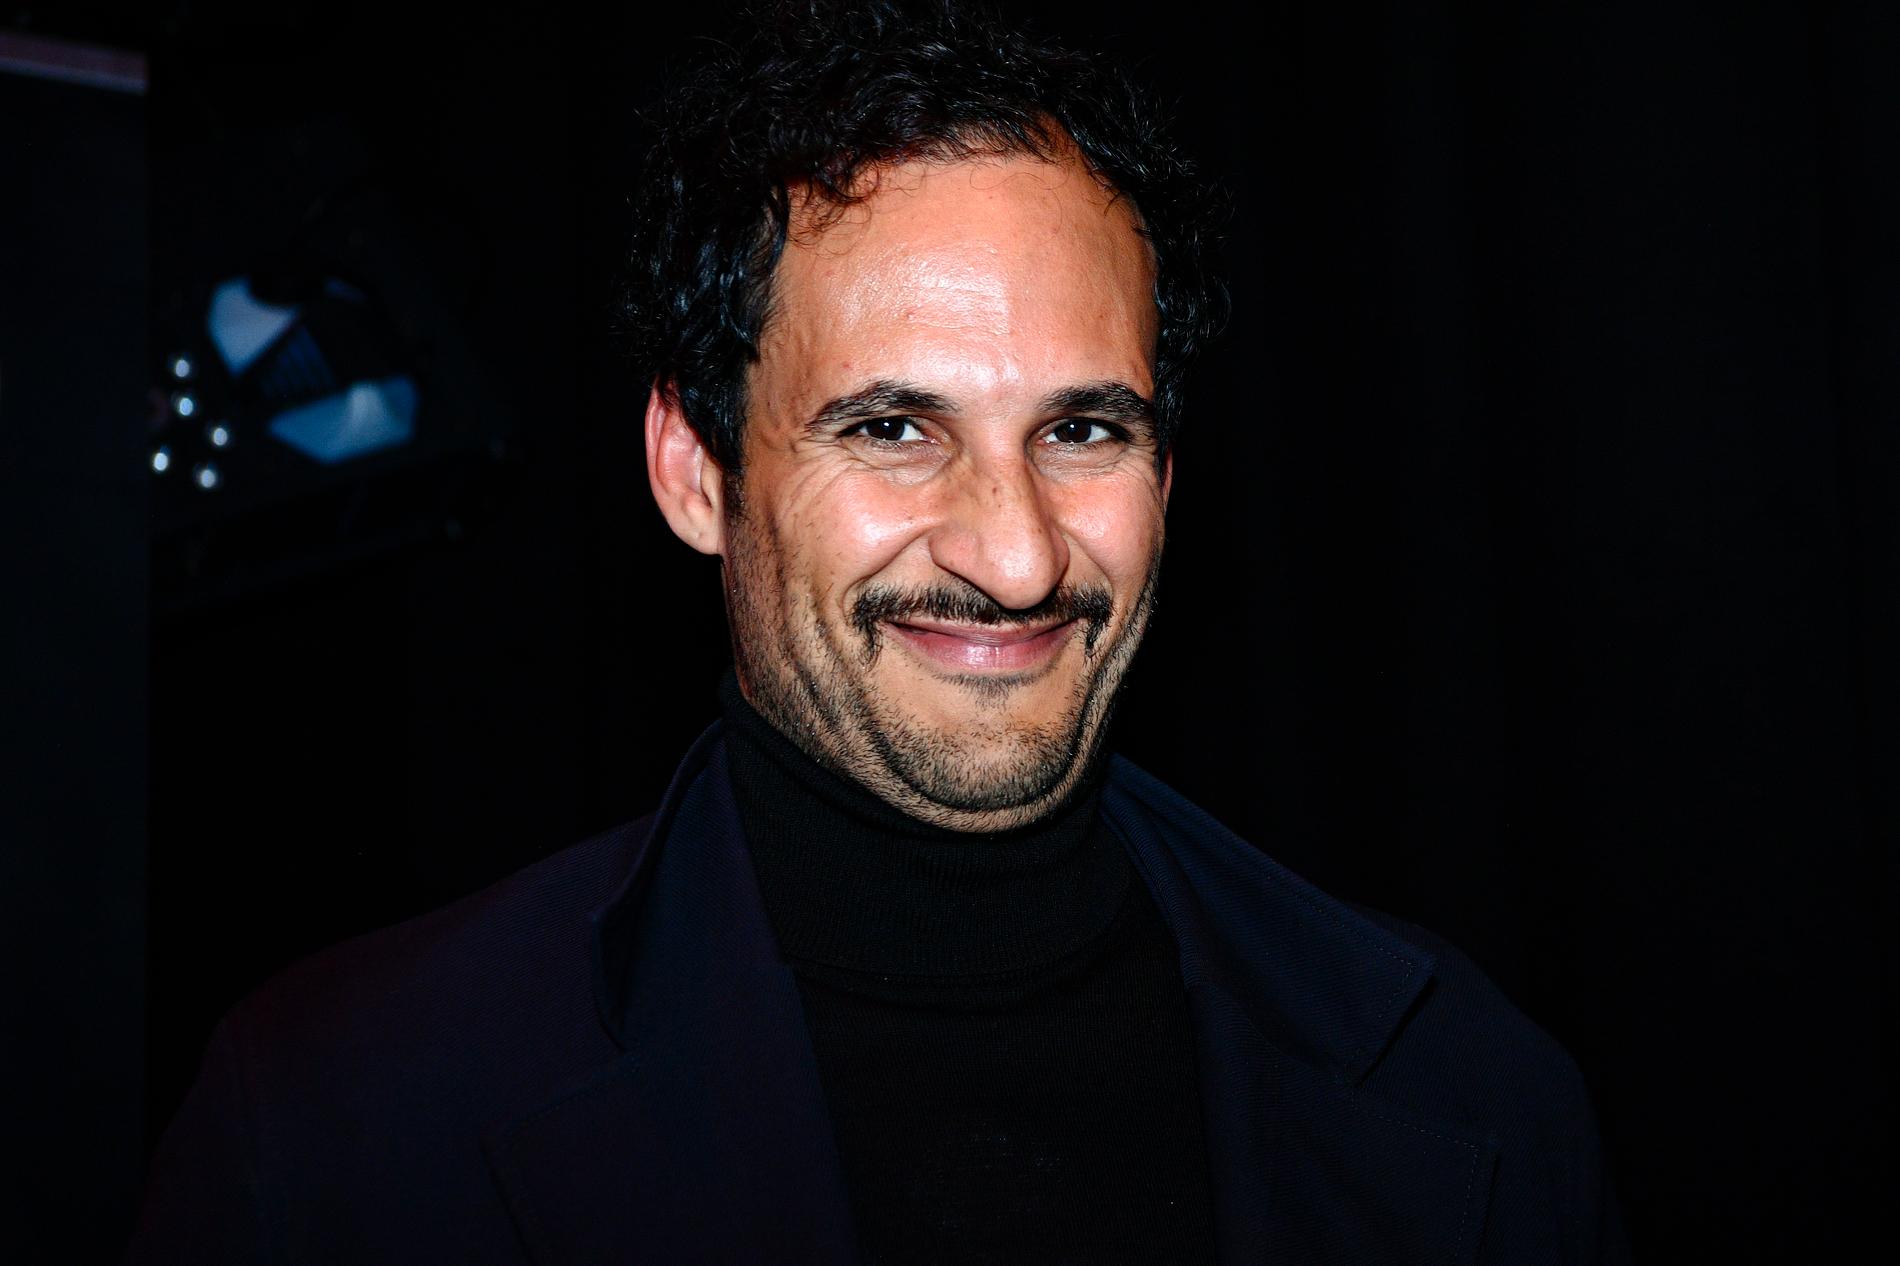 Regissören Ali Abbasi tävlar i Cannes med sin nya film